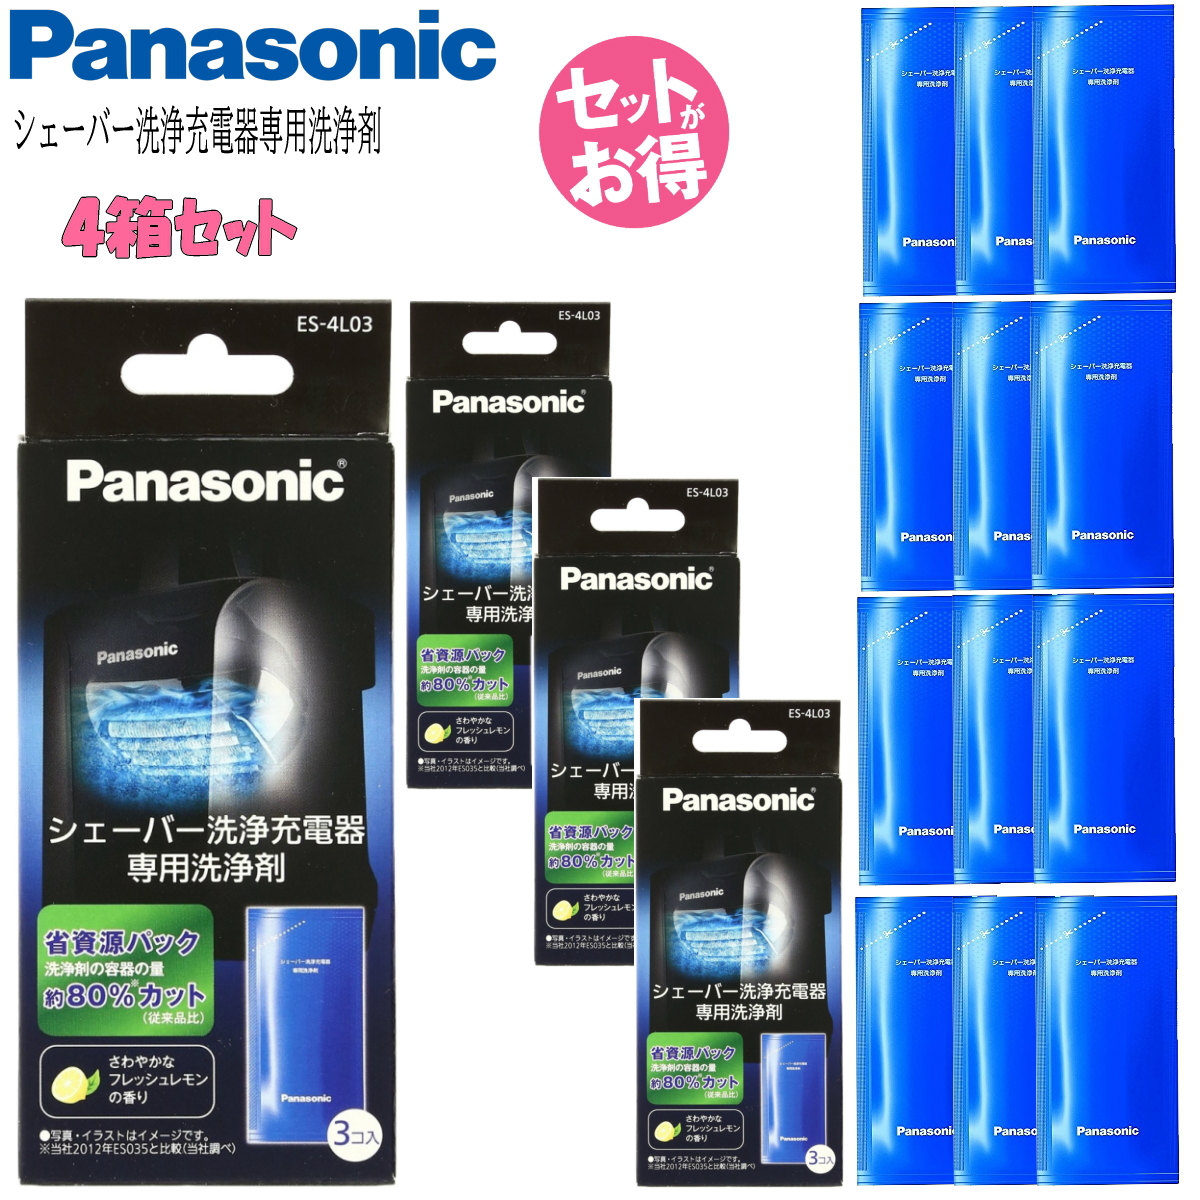 新作Panasonic パナソニック シェーバー洗浄充電器専用洗浄剤 ES-4L03 (1箱3個入り) 4箱セット 美容・健康家電用アクセサリー・部品 